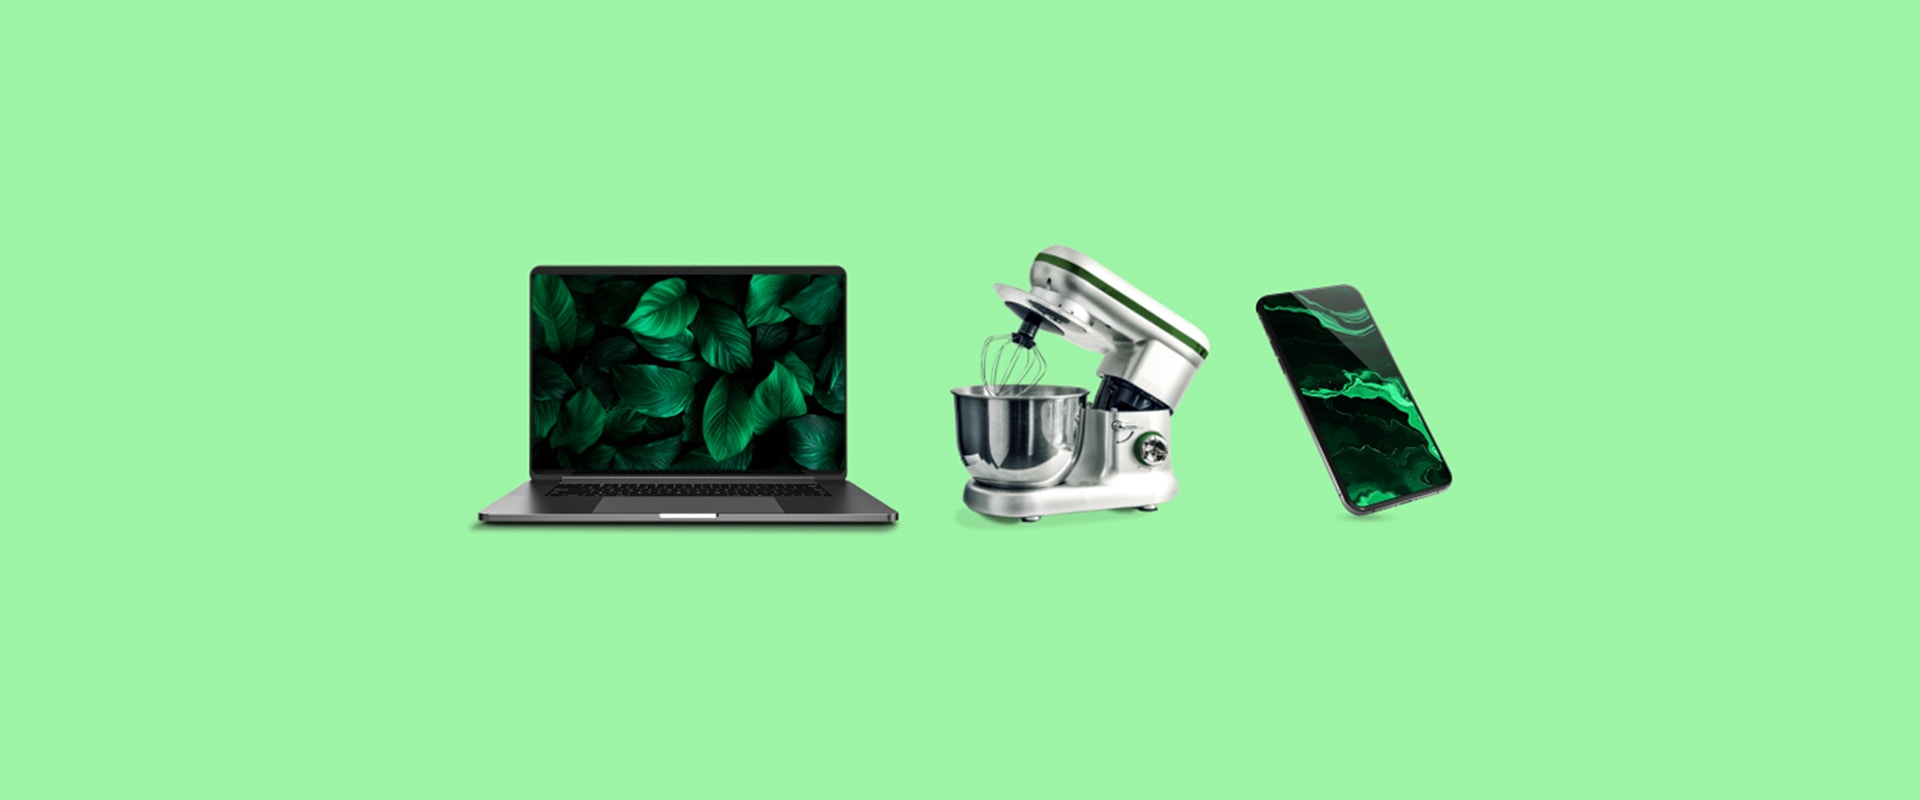 Ein Laptop, eine Küchenmaschine und ein Smartphone auf grünem Hintergrund